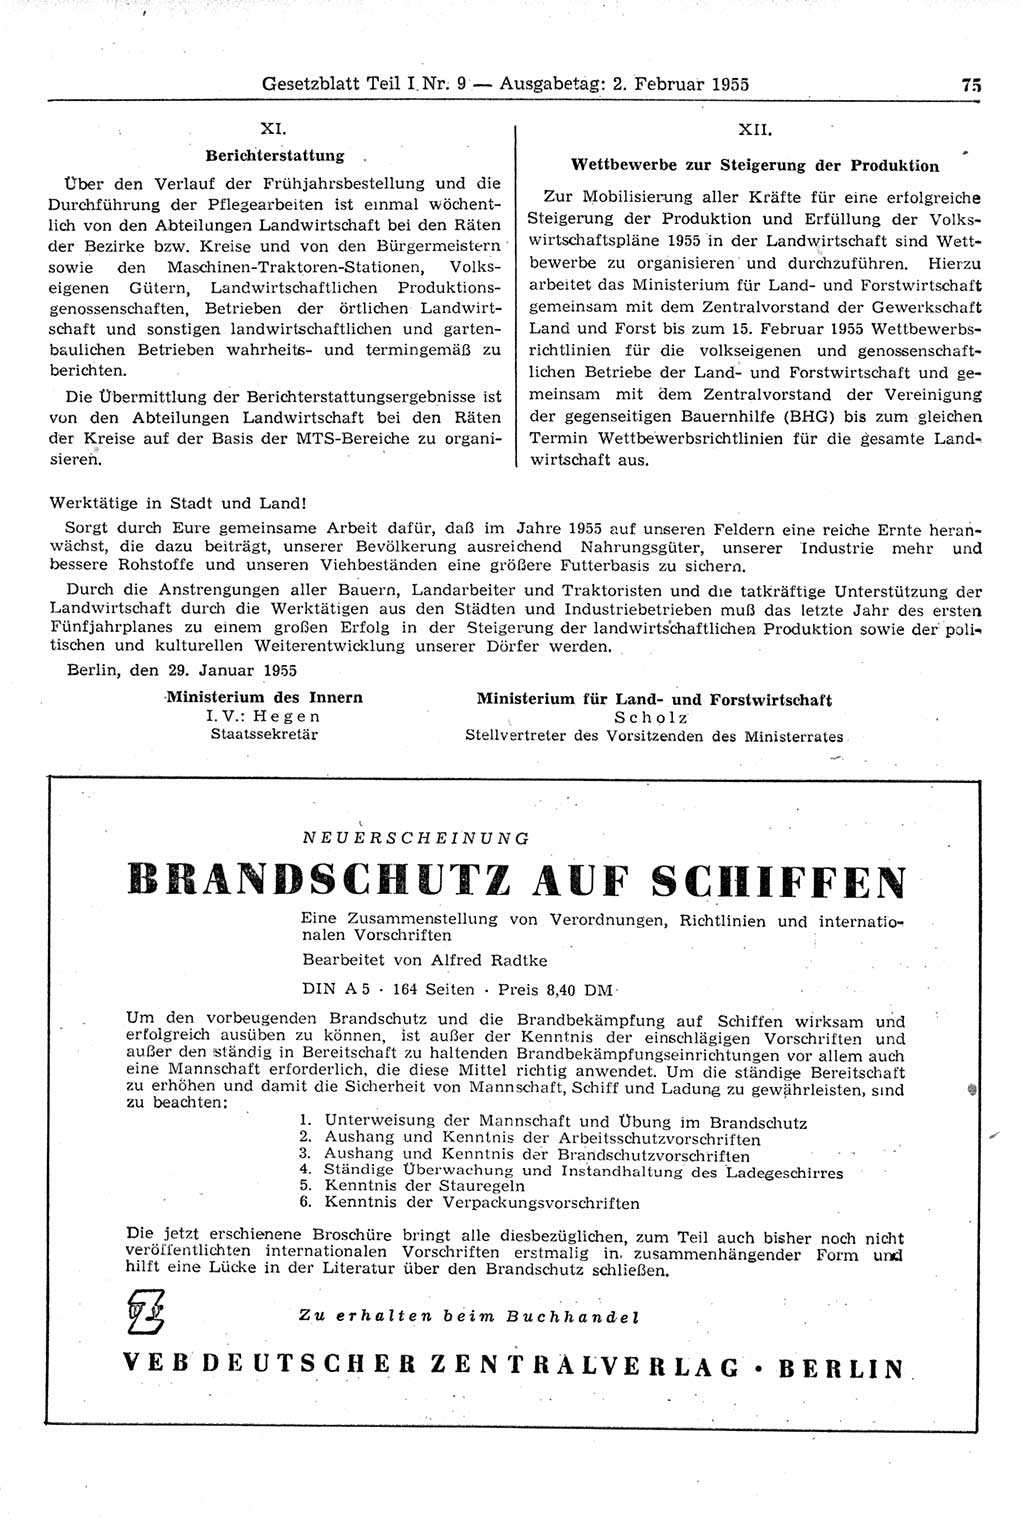 Gesetzblatt (GBl.) der Deutschen Demokratischen Republik (DDR) Teil Ⅰ 1955, Seite 75 (GBl. DDR Ⅰ 1955, S. 75)